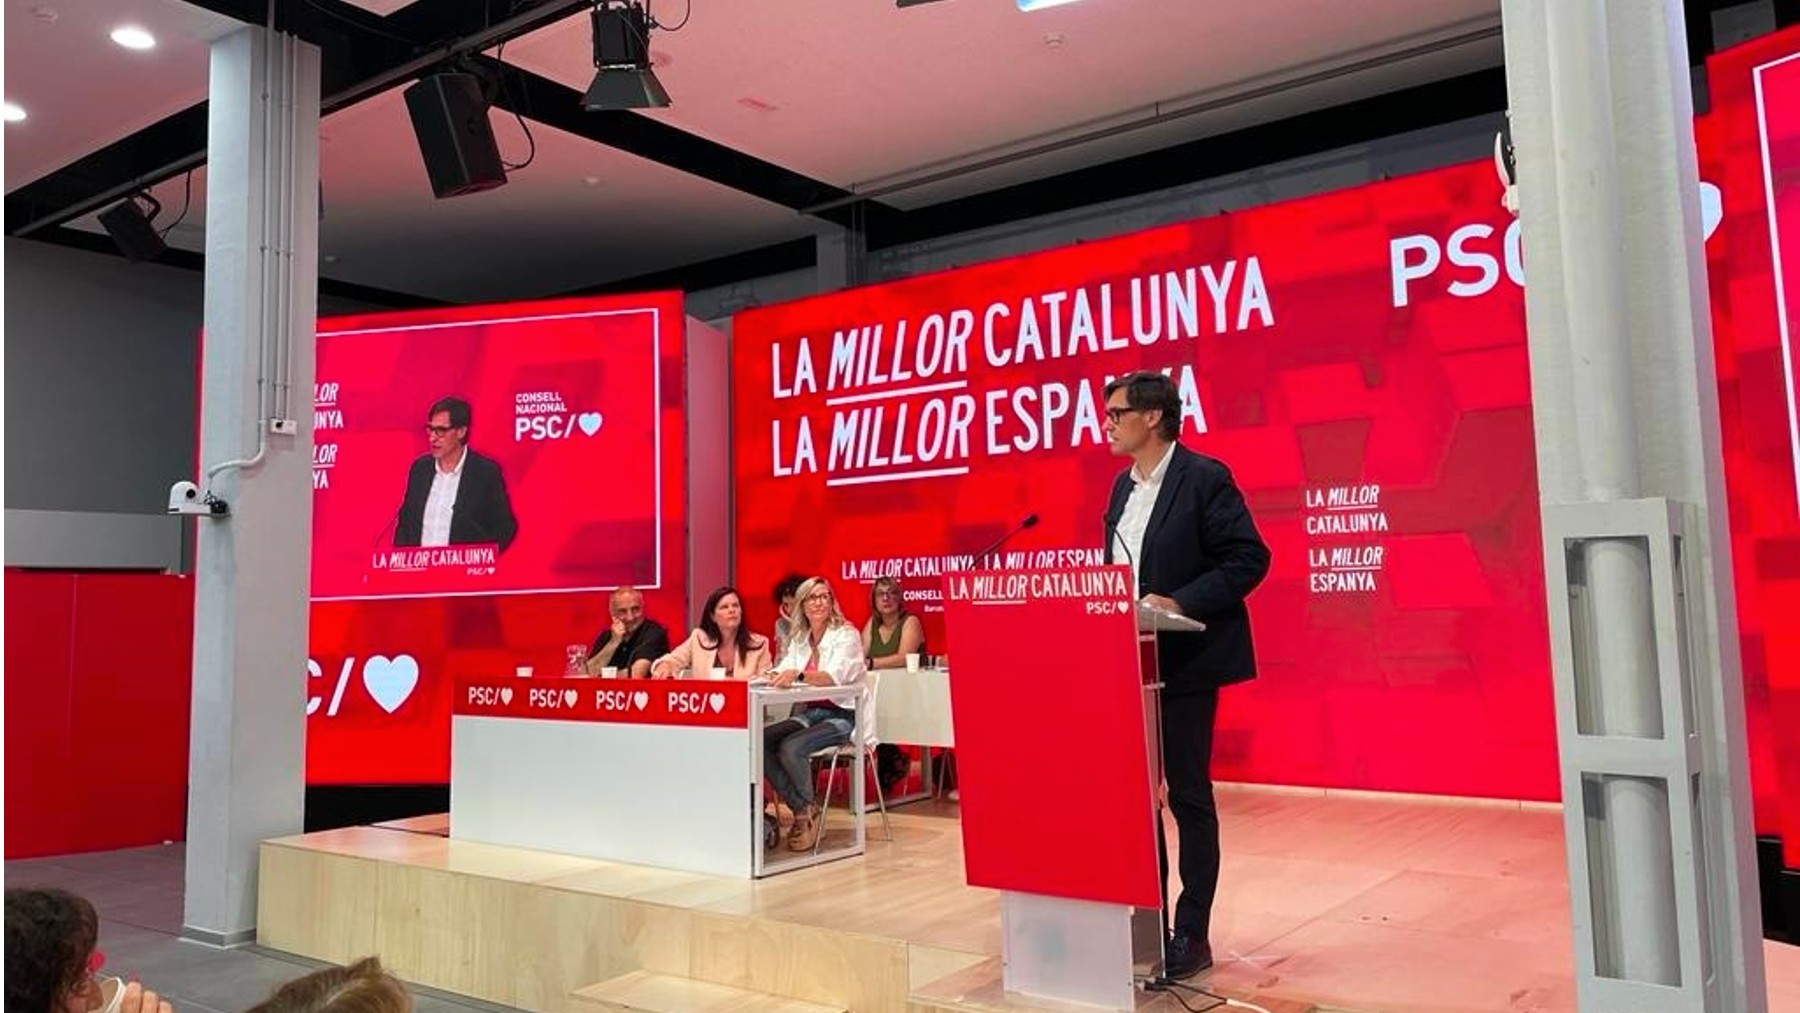 El PSC ganará las elecciones en Cataluña y el PP disputa el 2º puesto a ERC y JxCAT, según el CEO